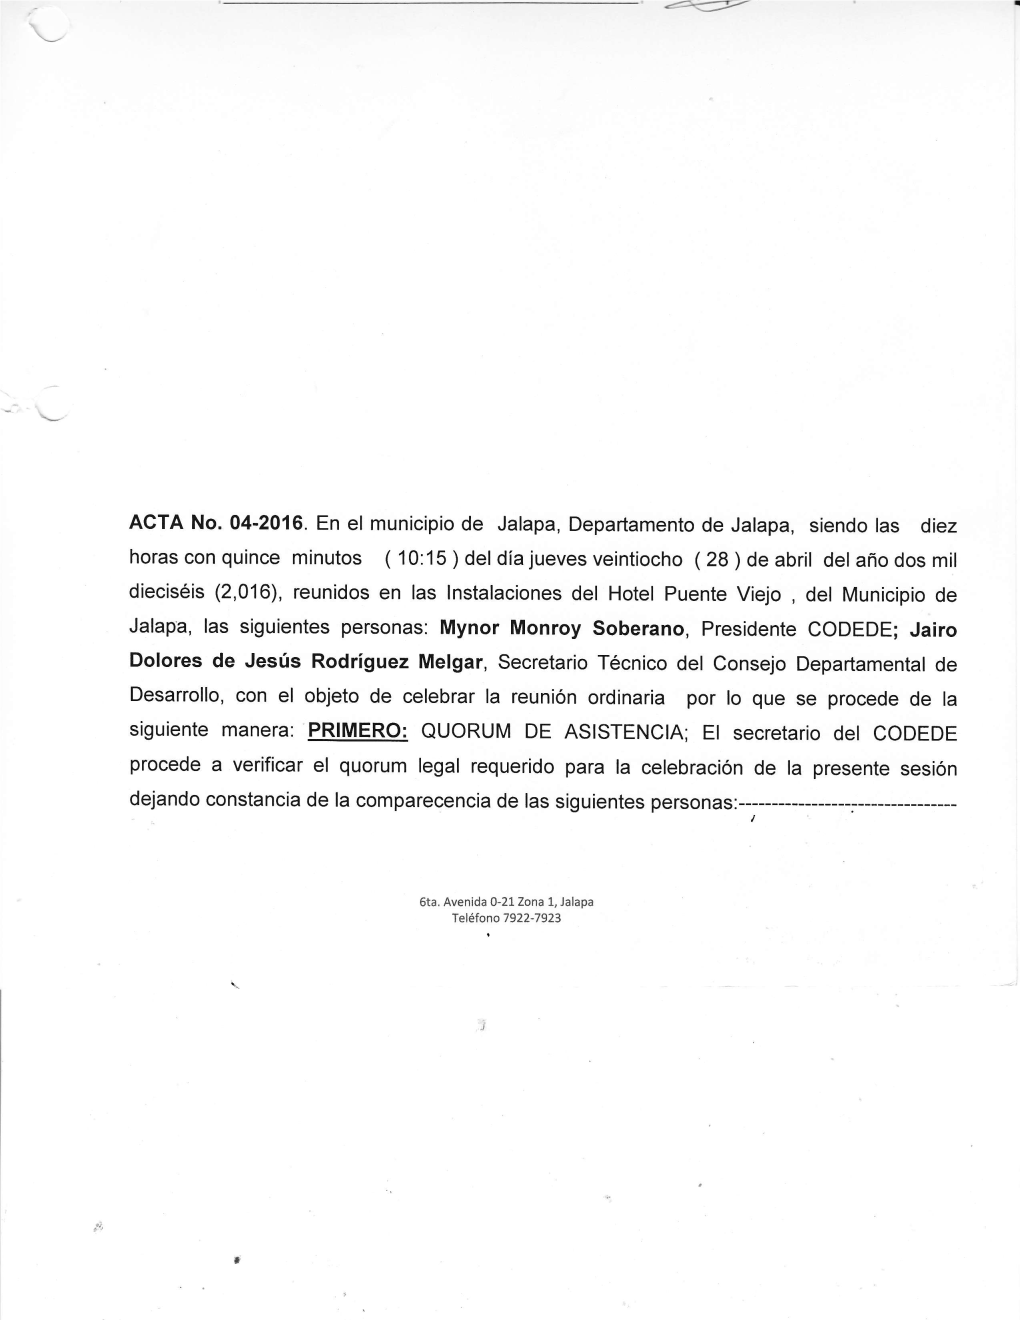 ACTA No. 04-2016. En El Municipio De Jalapa, Departamento De Jalapa